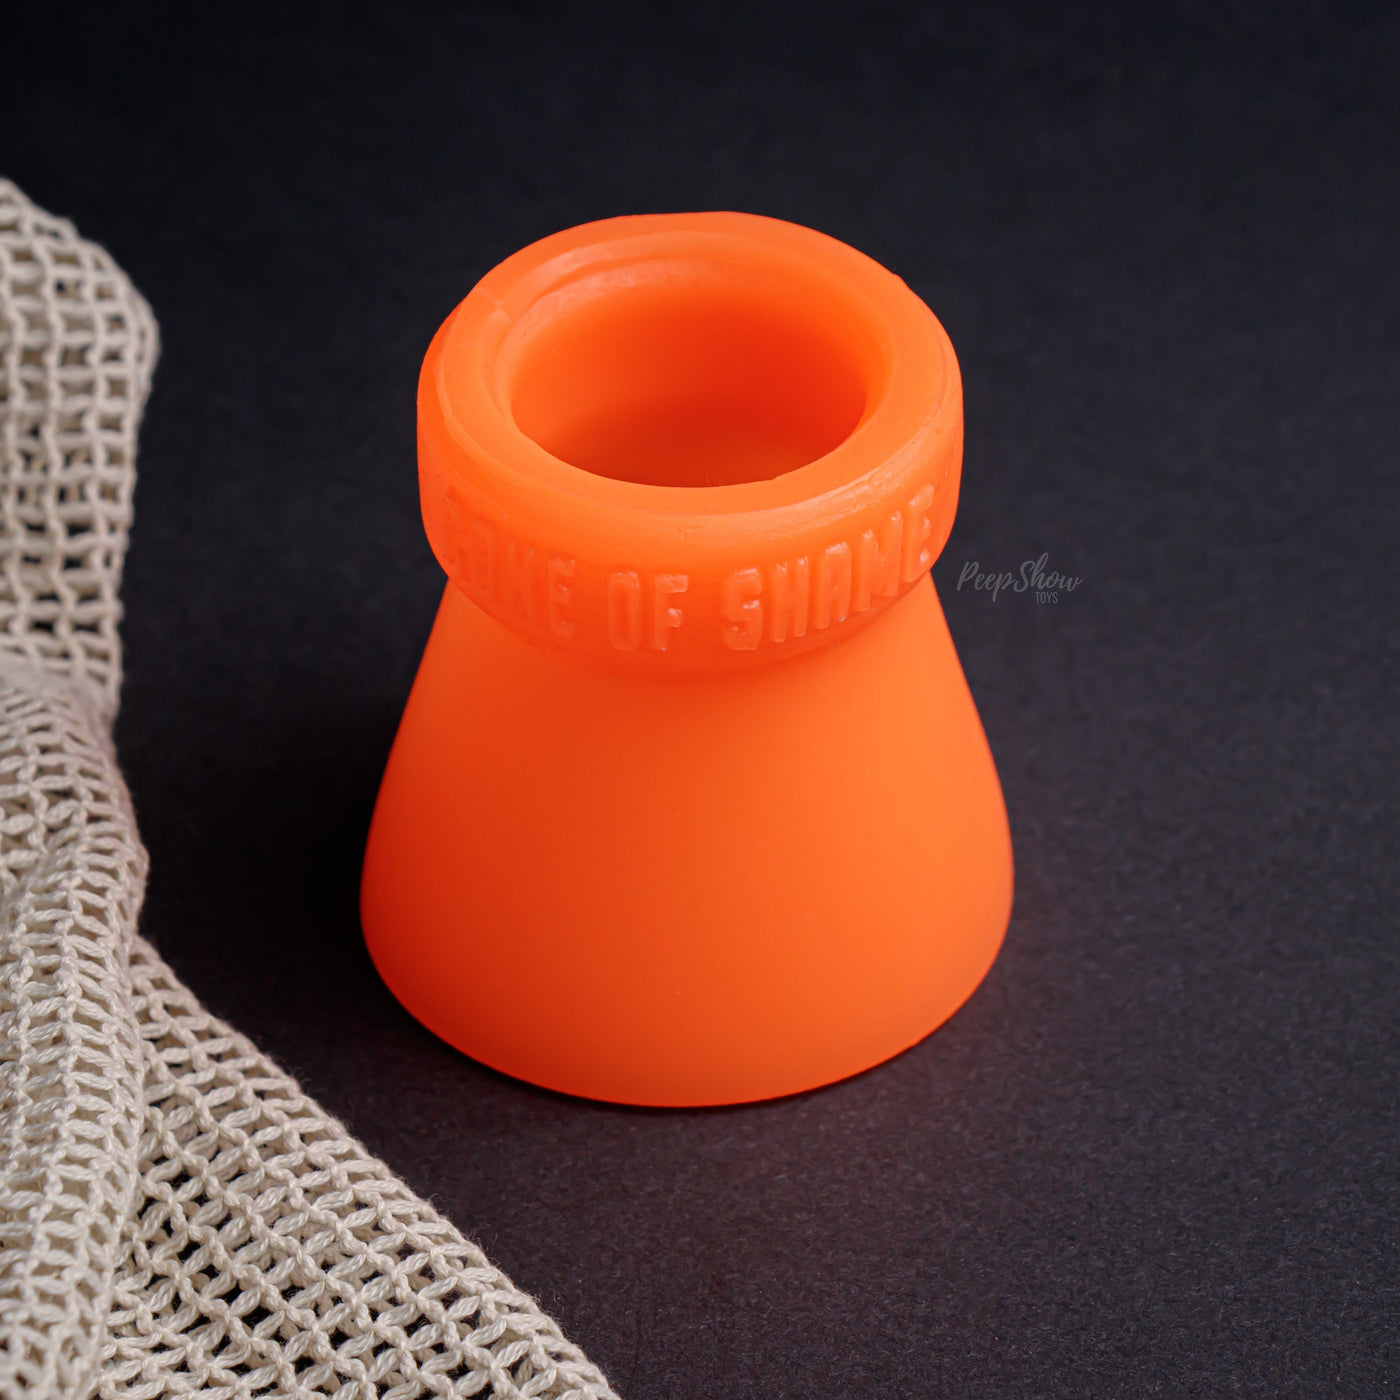 Oxballs Cone of Shame Silicone Chastity Device Orange